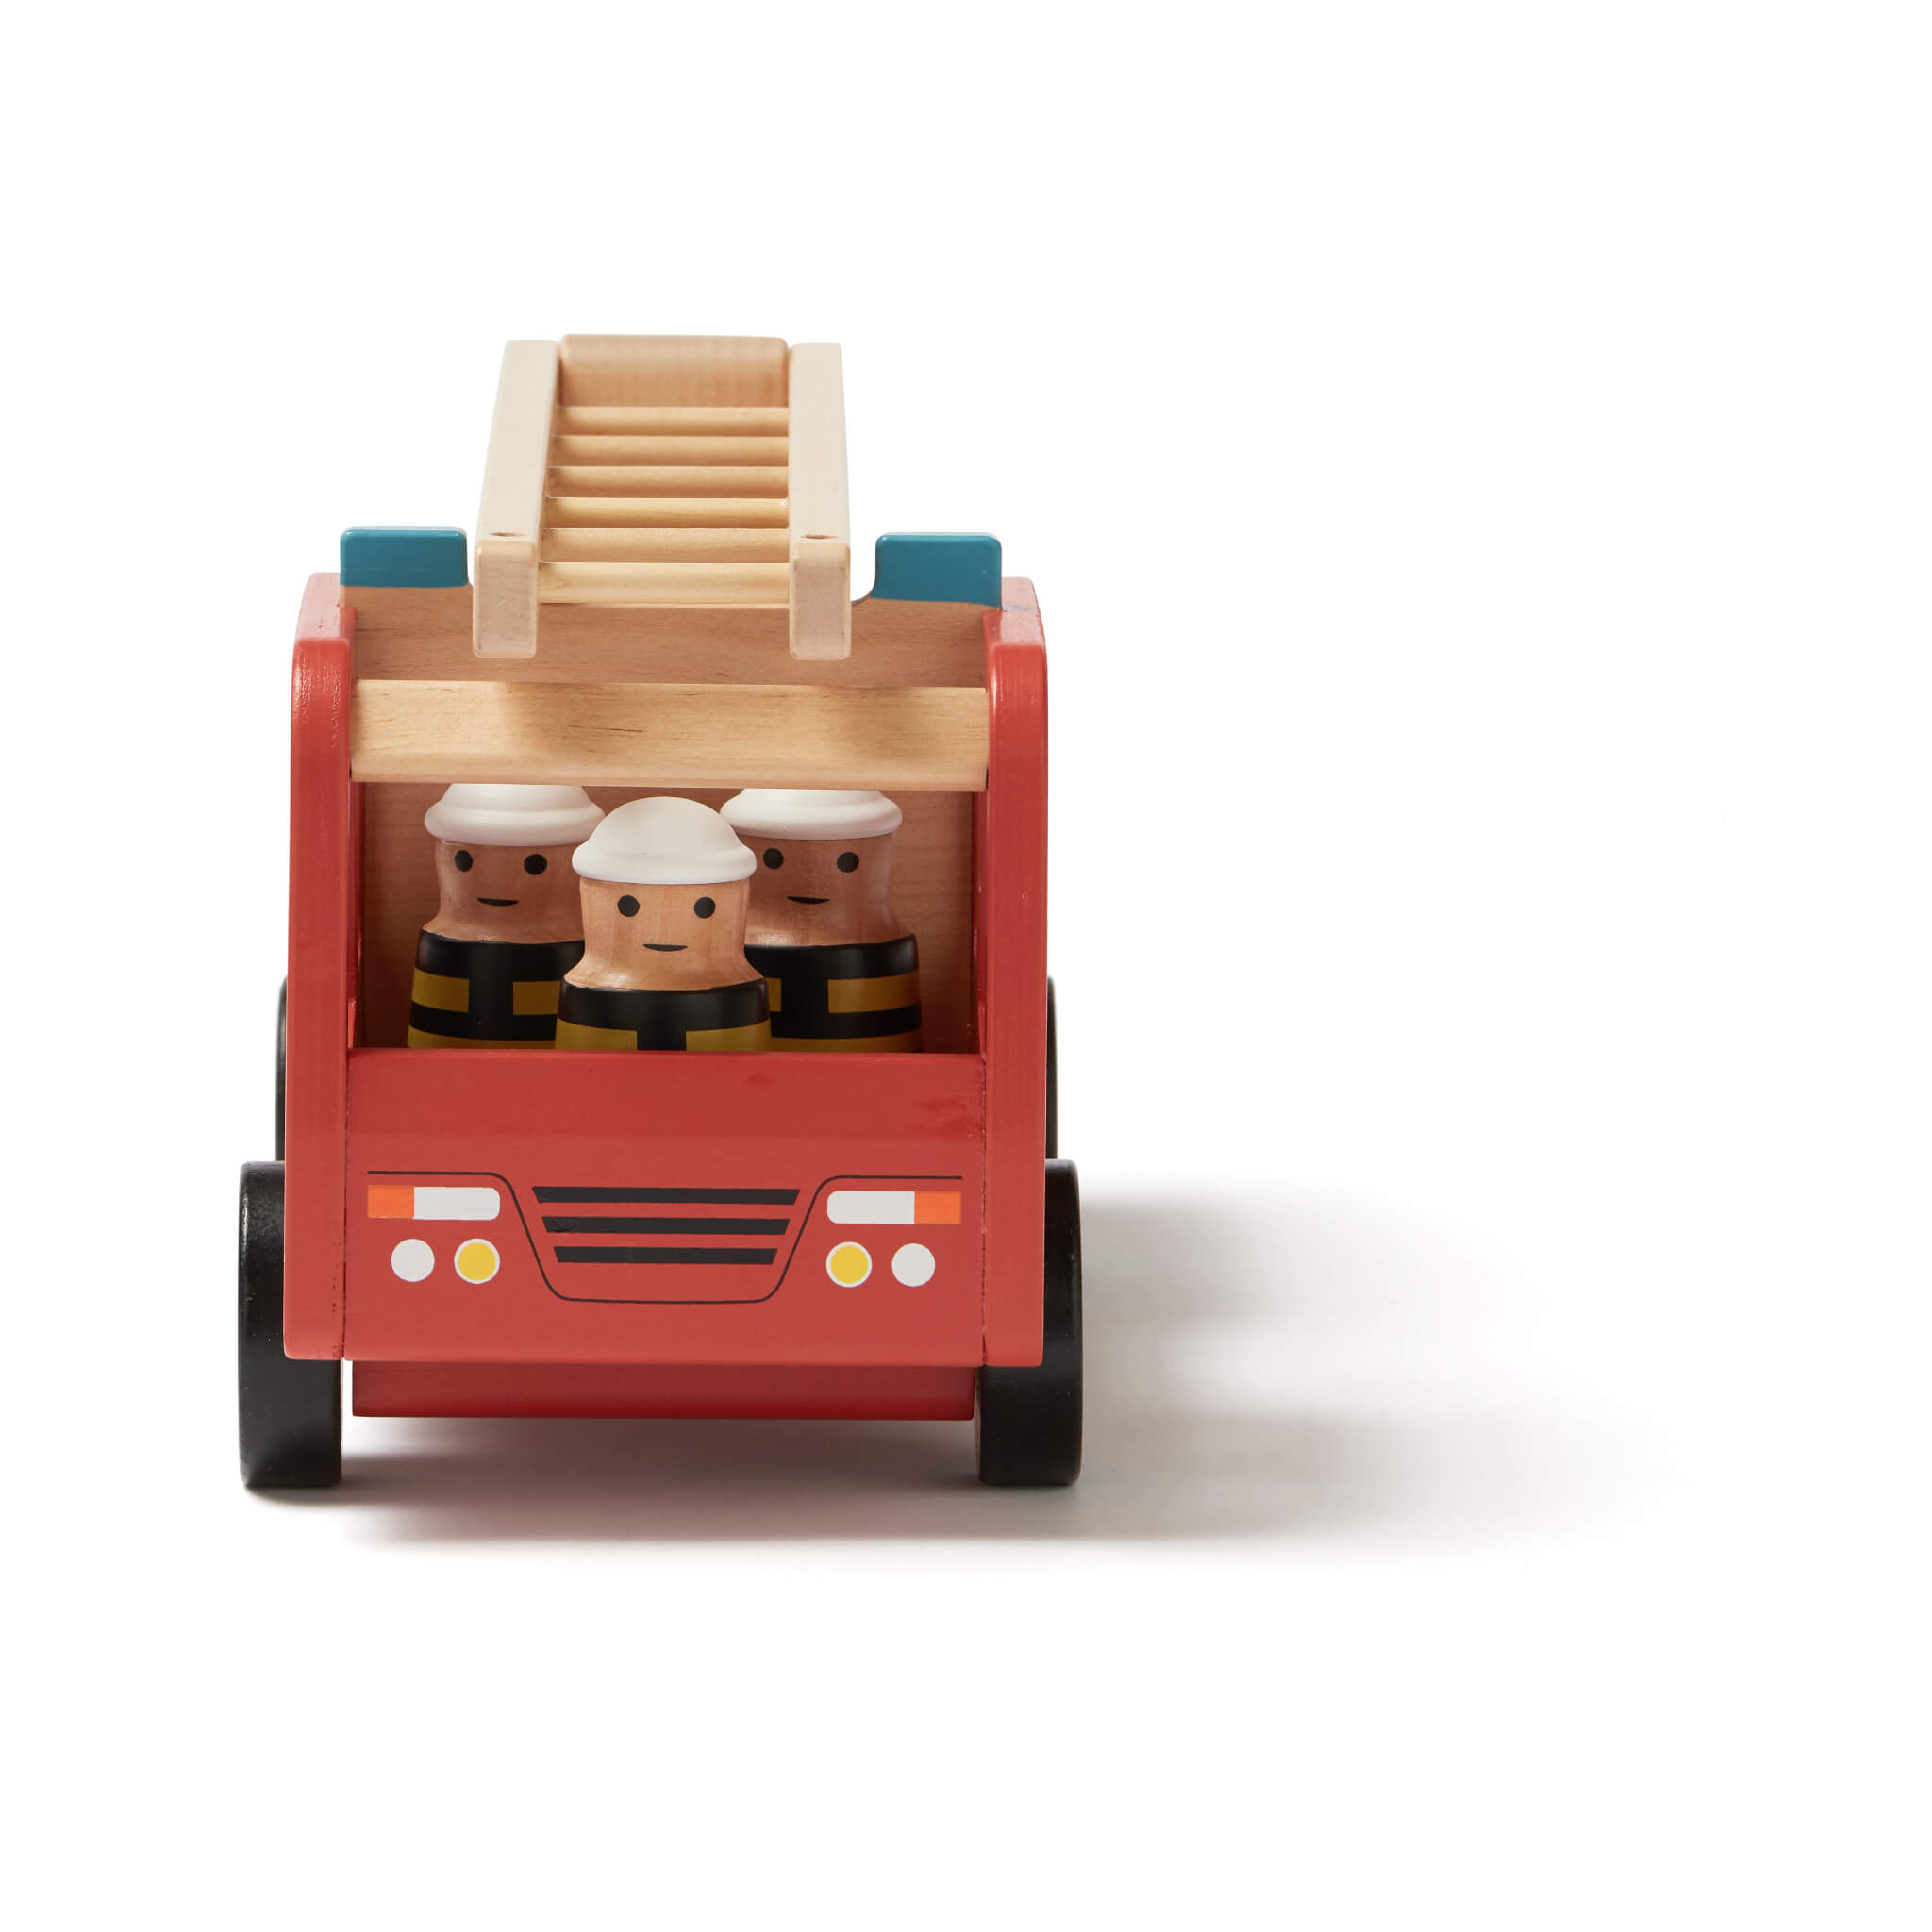 Kids Concept Wooden Fire Truck